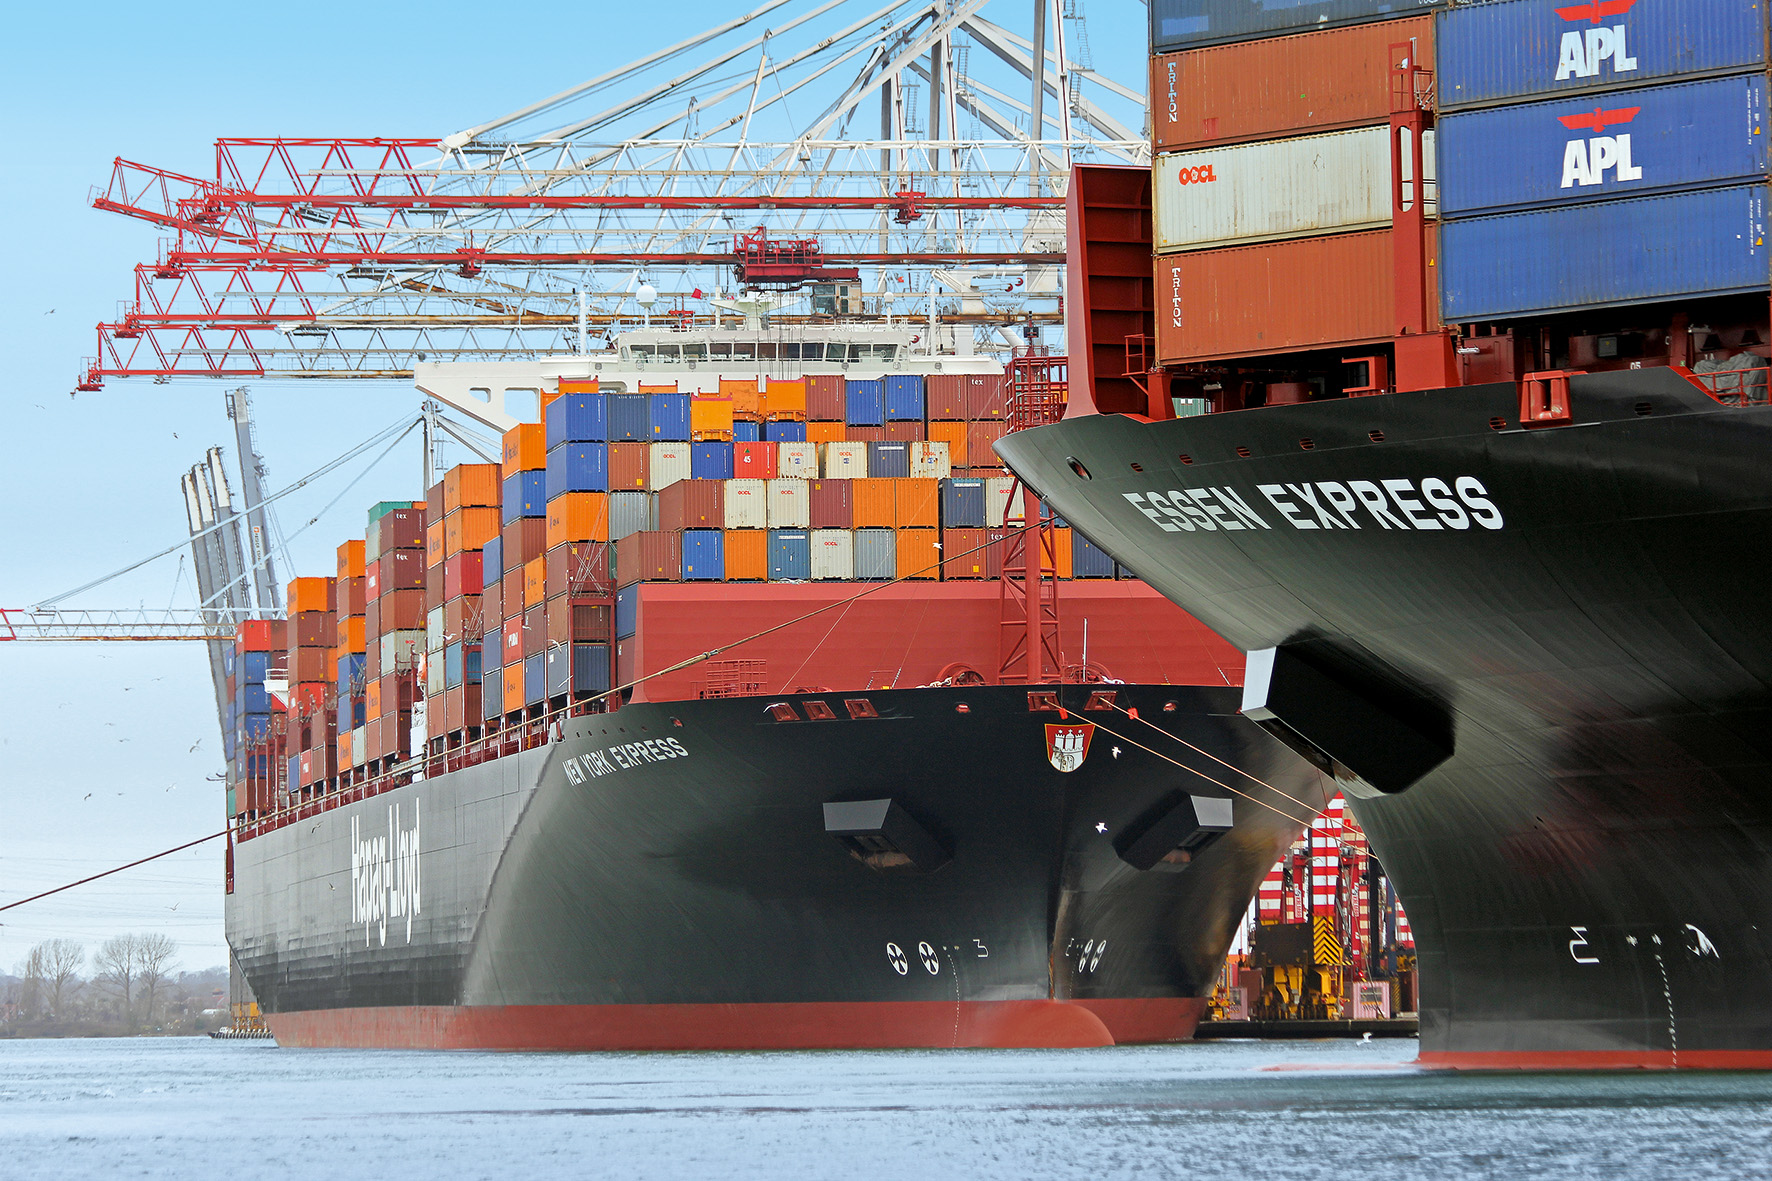 Hapag-Lloyd – Container-Reederei profitiert von hohen Frachtraten, doch die Meinungen der Analysten gehen weit auseinander: 42 % Kurspotenzial vs. 48 % Kursverfall